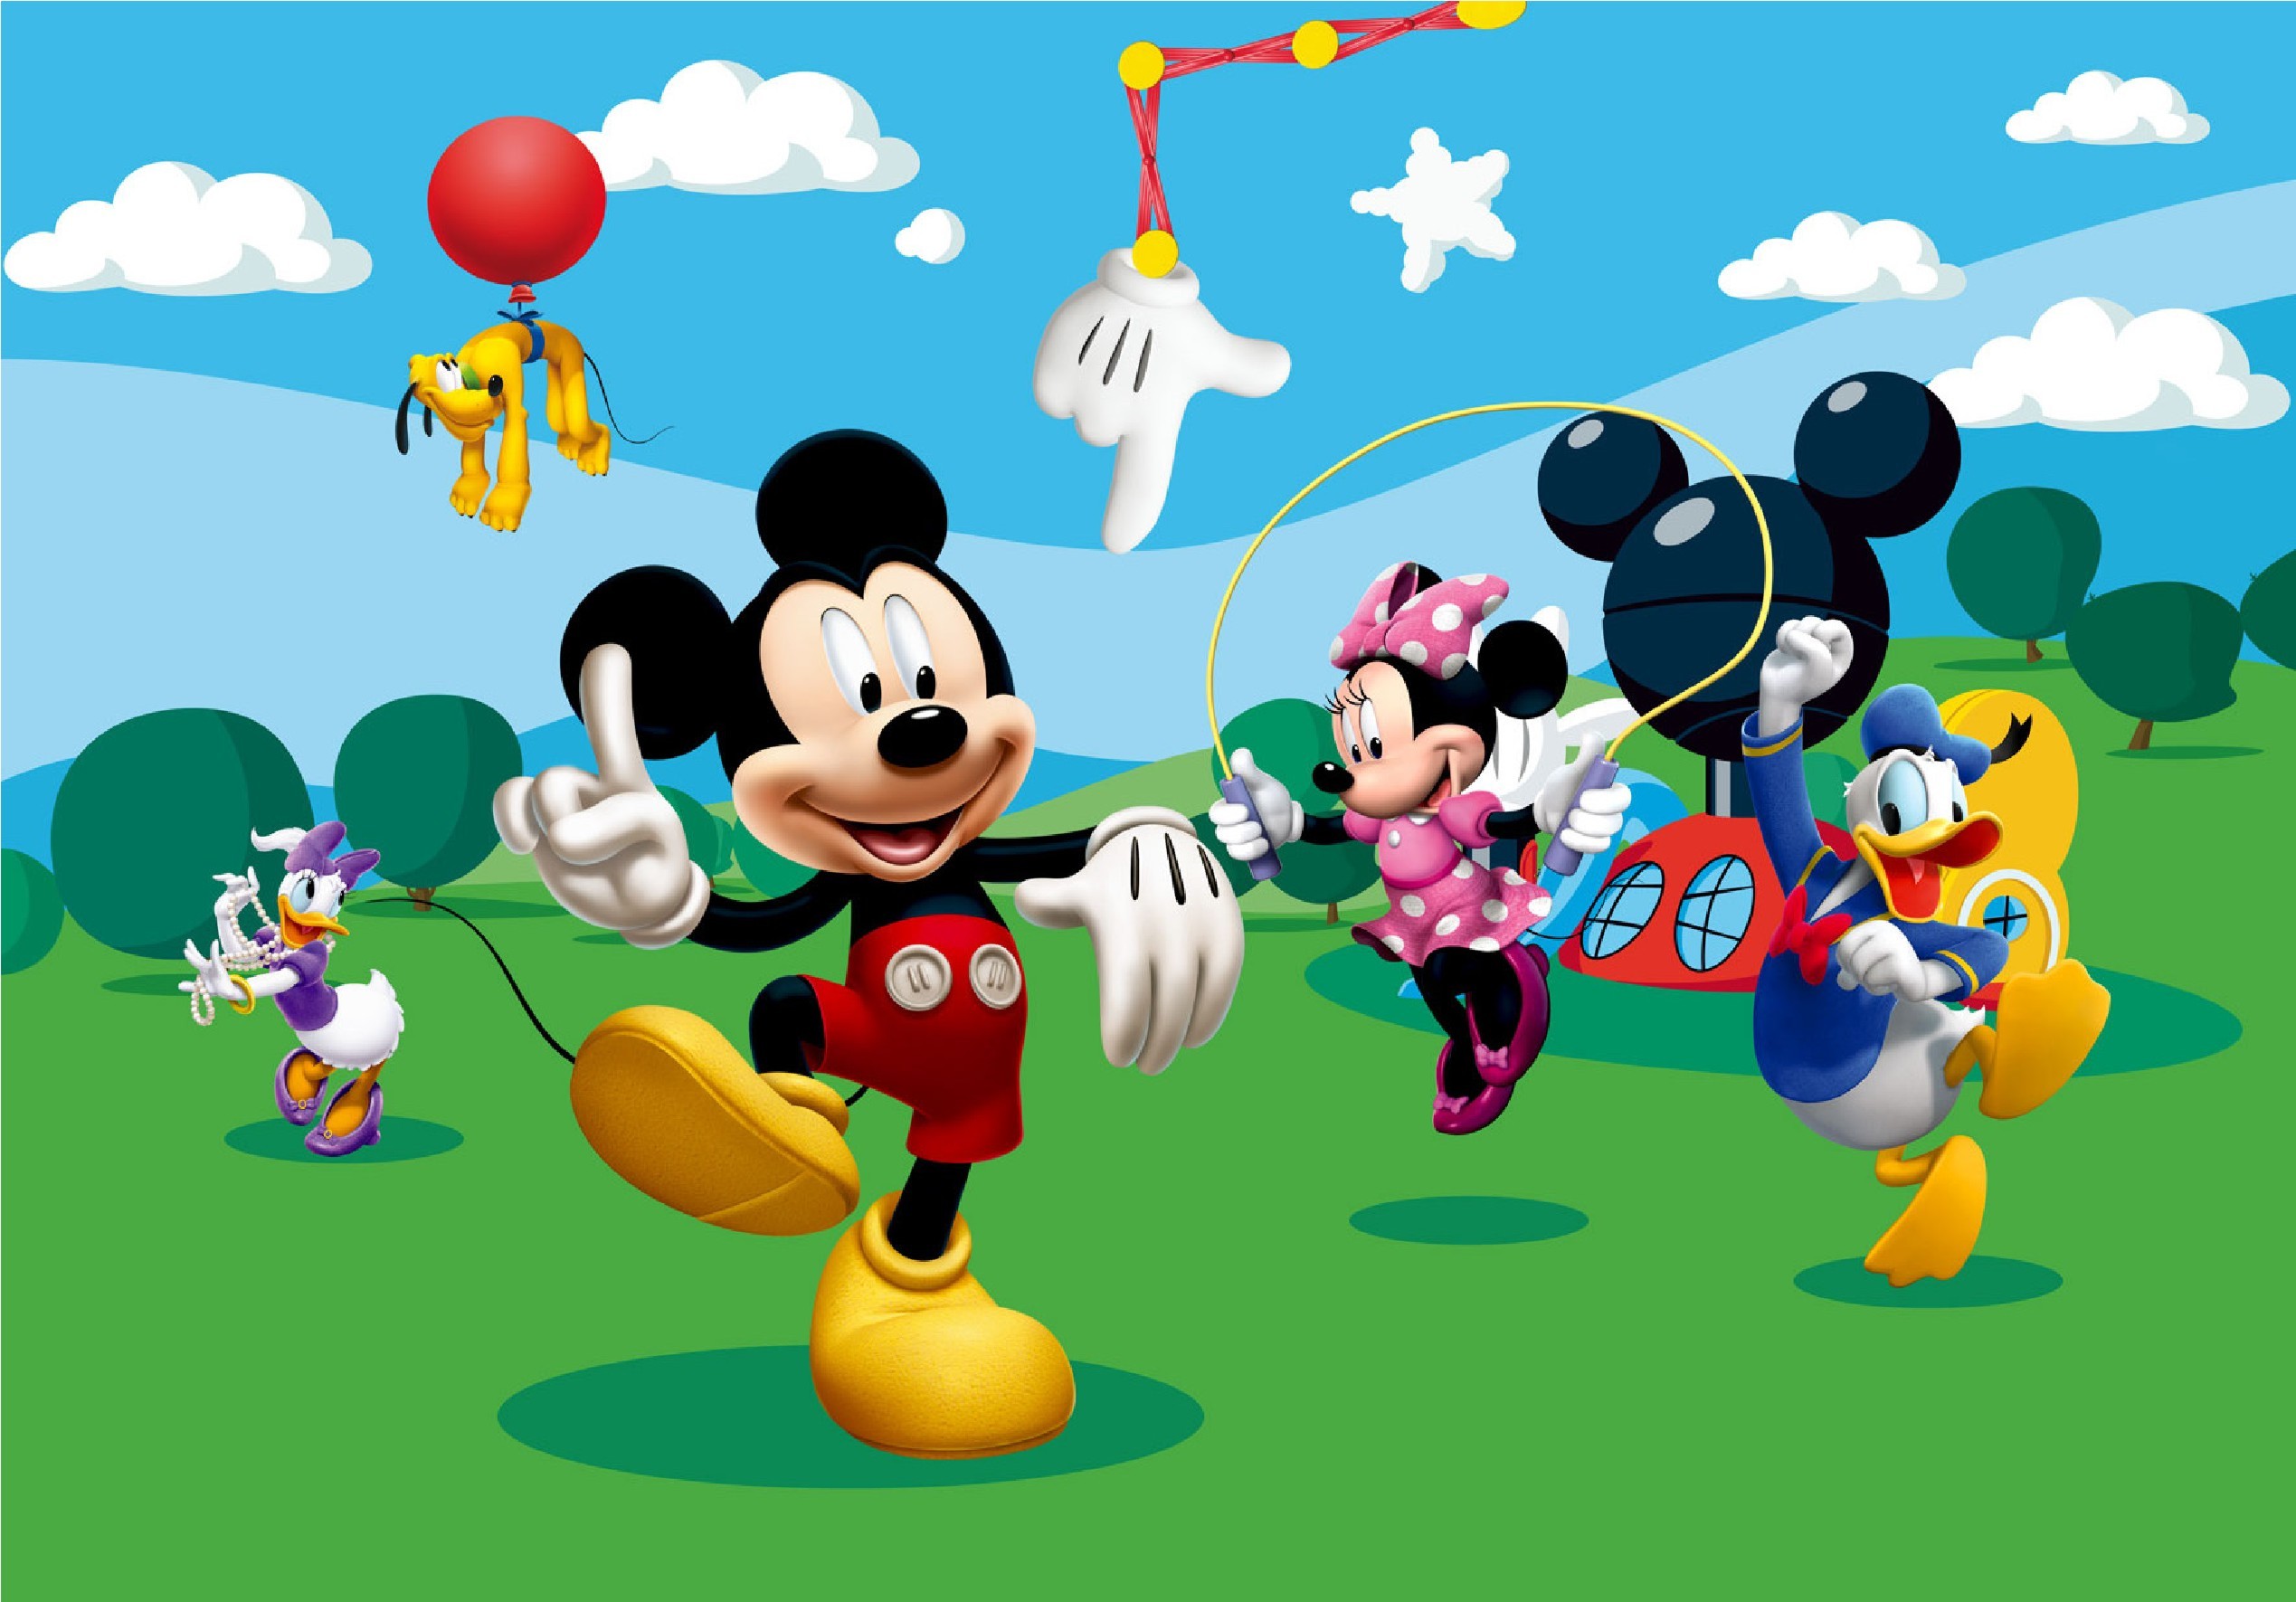 00 253 Î¦ïïî¿ï Î±ïîµïïî±ïî¯î± Ïî¿î¯ïî¿ï M - Mickey Mouse Cartoon Background - HD Wallpaper 